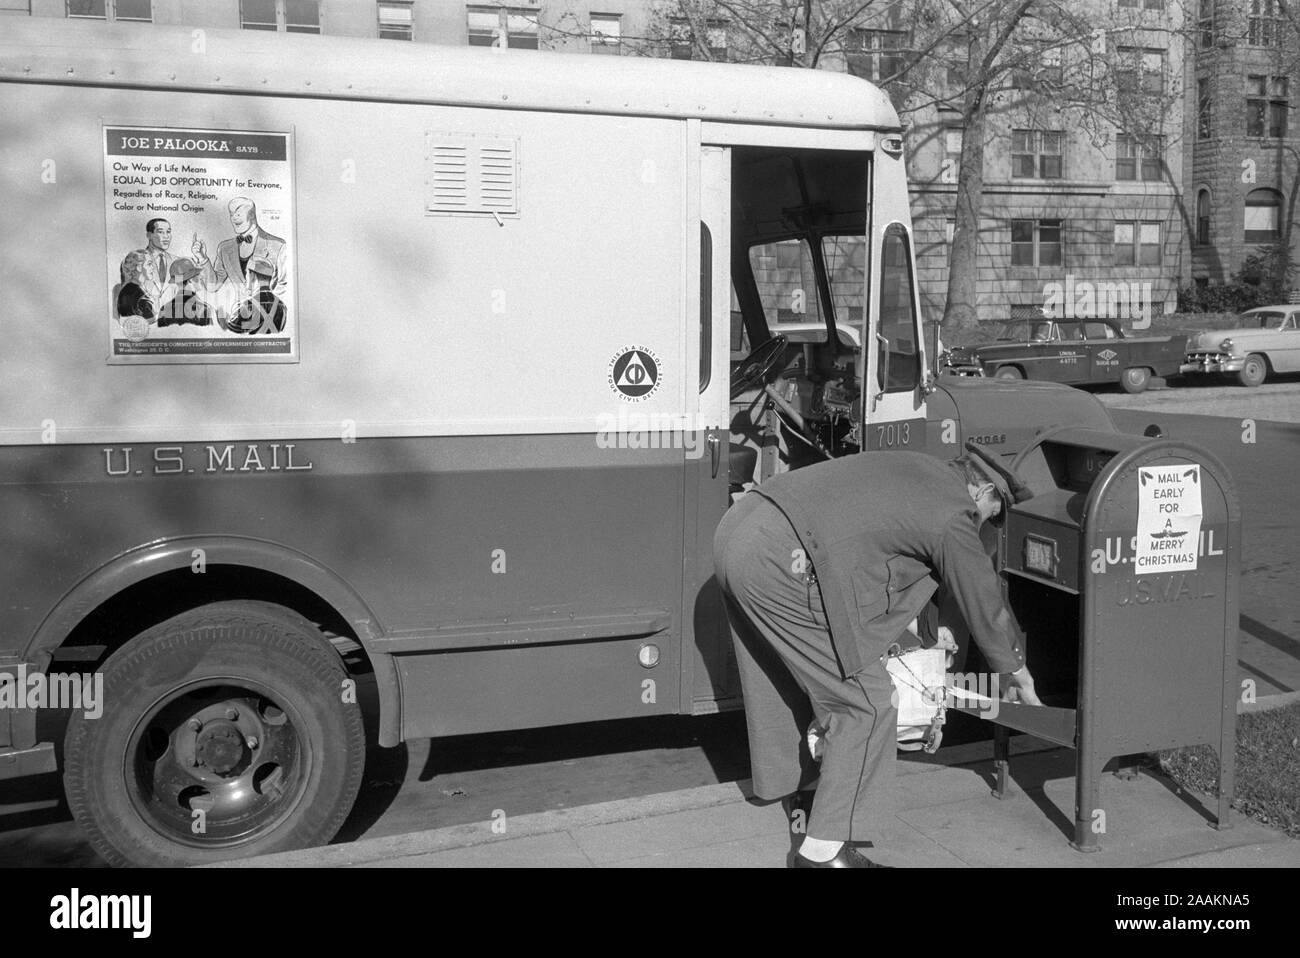 La Mailman ramasser le courrier de boîte aux lettres, Job Opportunity Poster sur le côté de la camionnette, Washington, D.C., USA, photo de Thomas J. O'Halloran, Février 1957 Banque D'Images